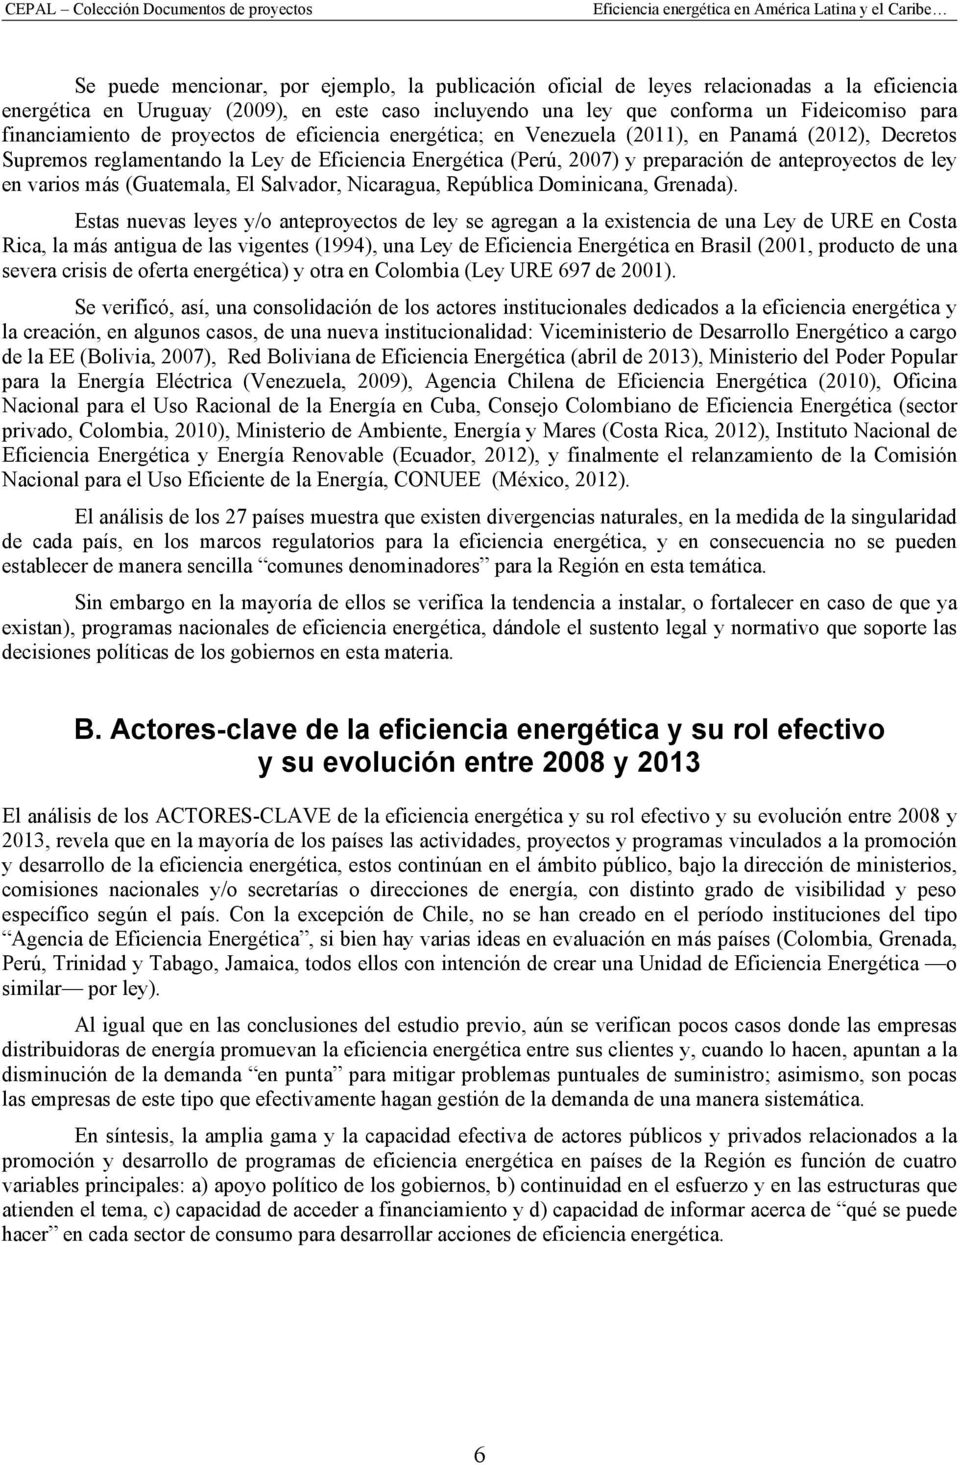 anteproyectos de ley en varios más (Guatemala, El Salvador, Nicaragua, República Dominicana, Grenada).